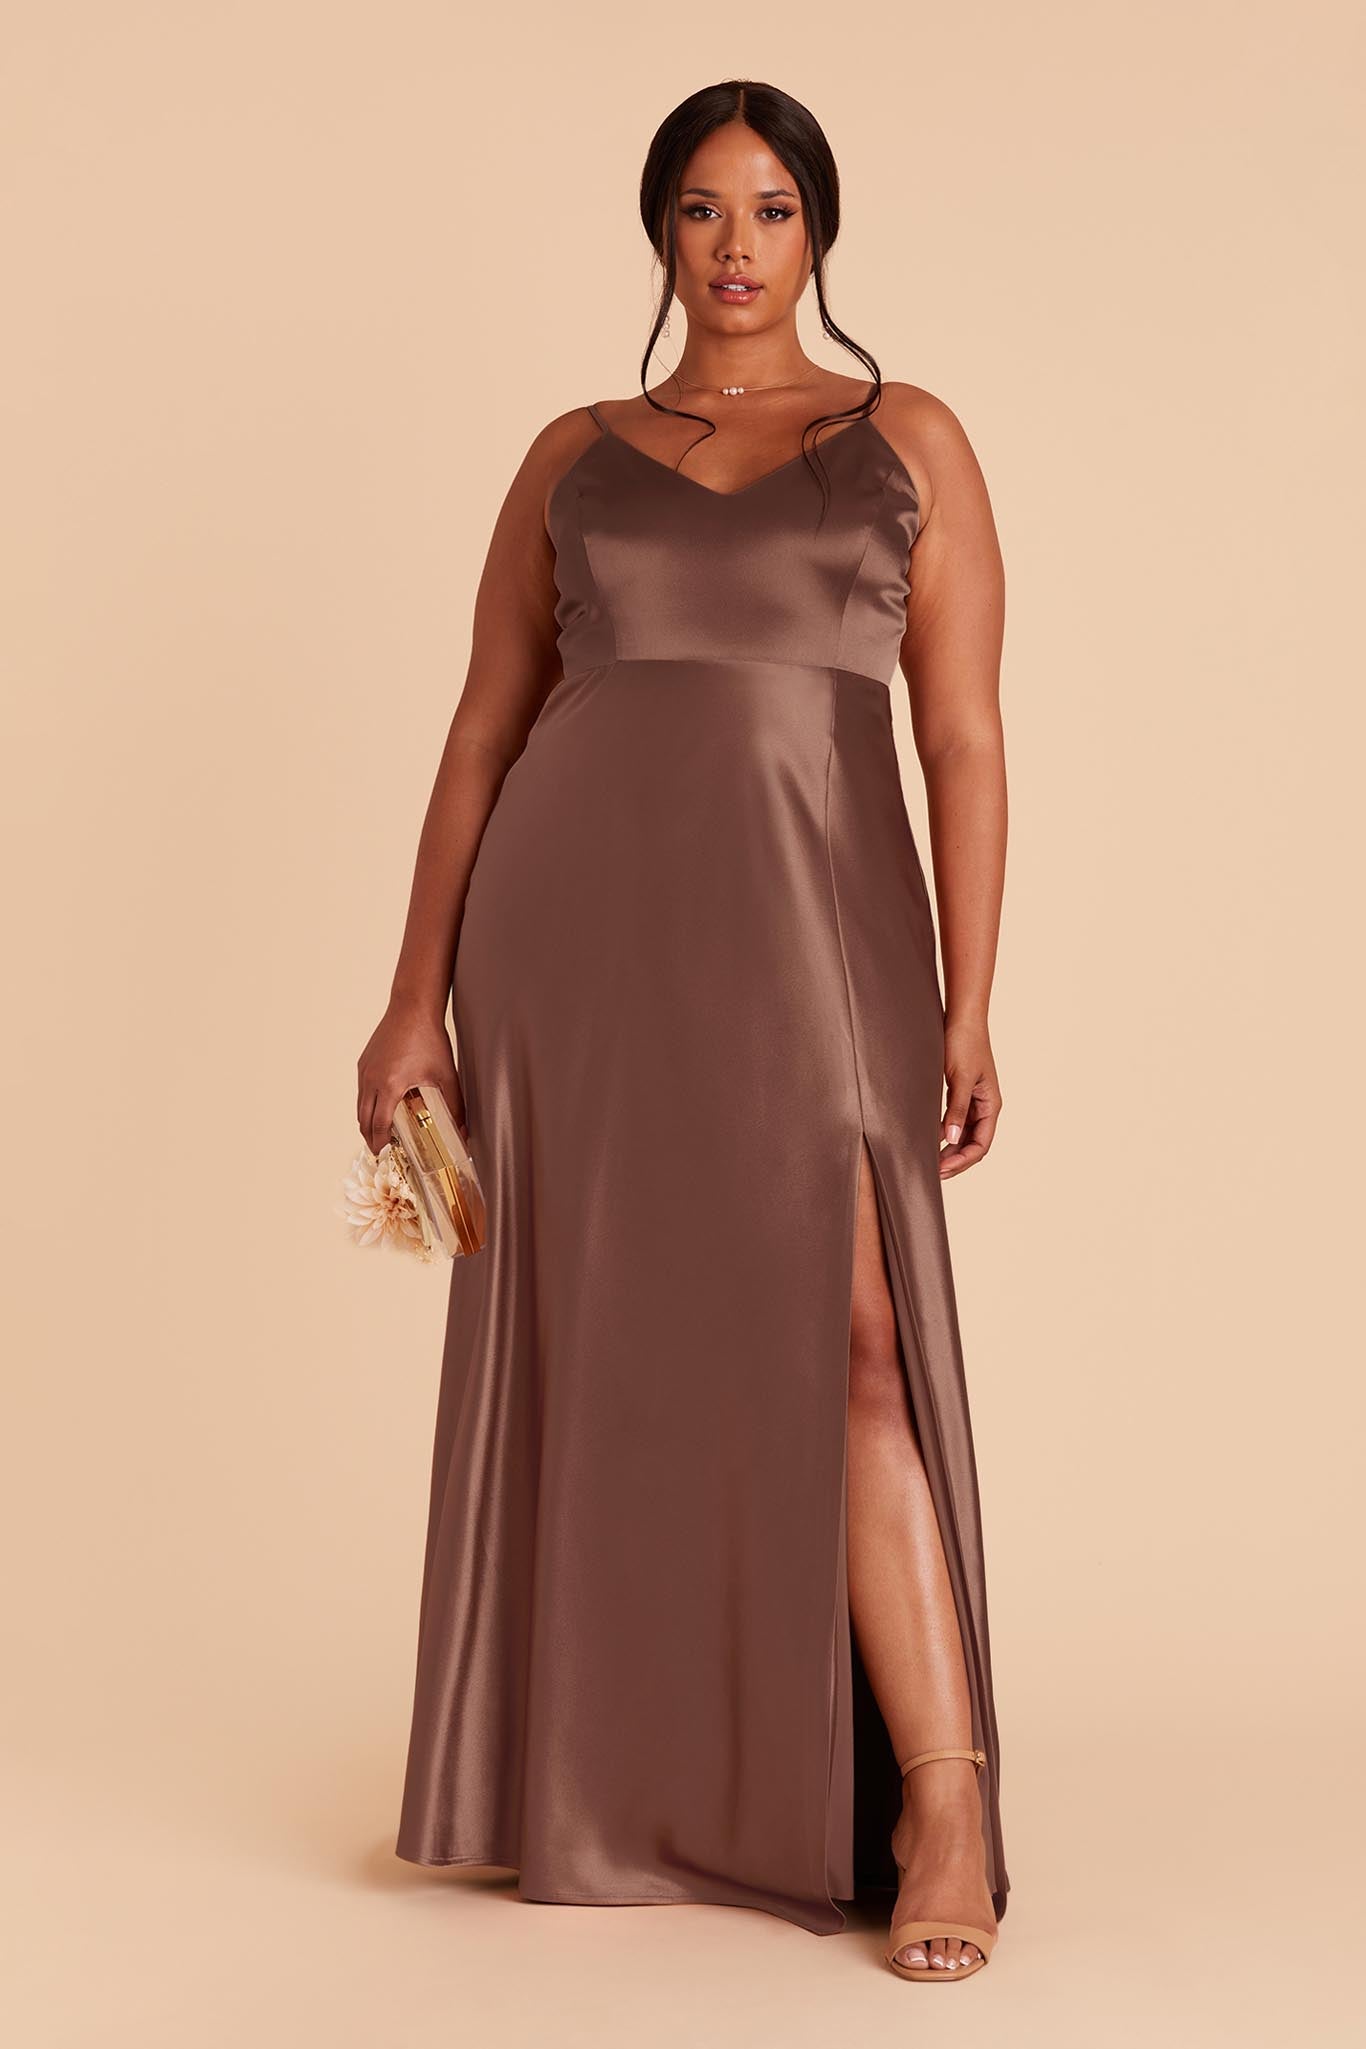 Chocolate Brown Jay Satin Dress by Birdy Grey